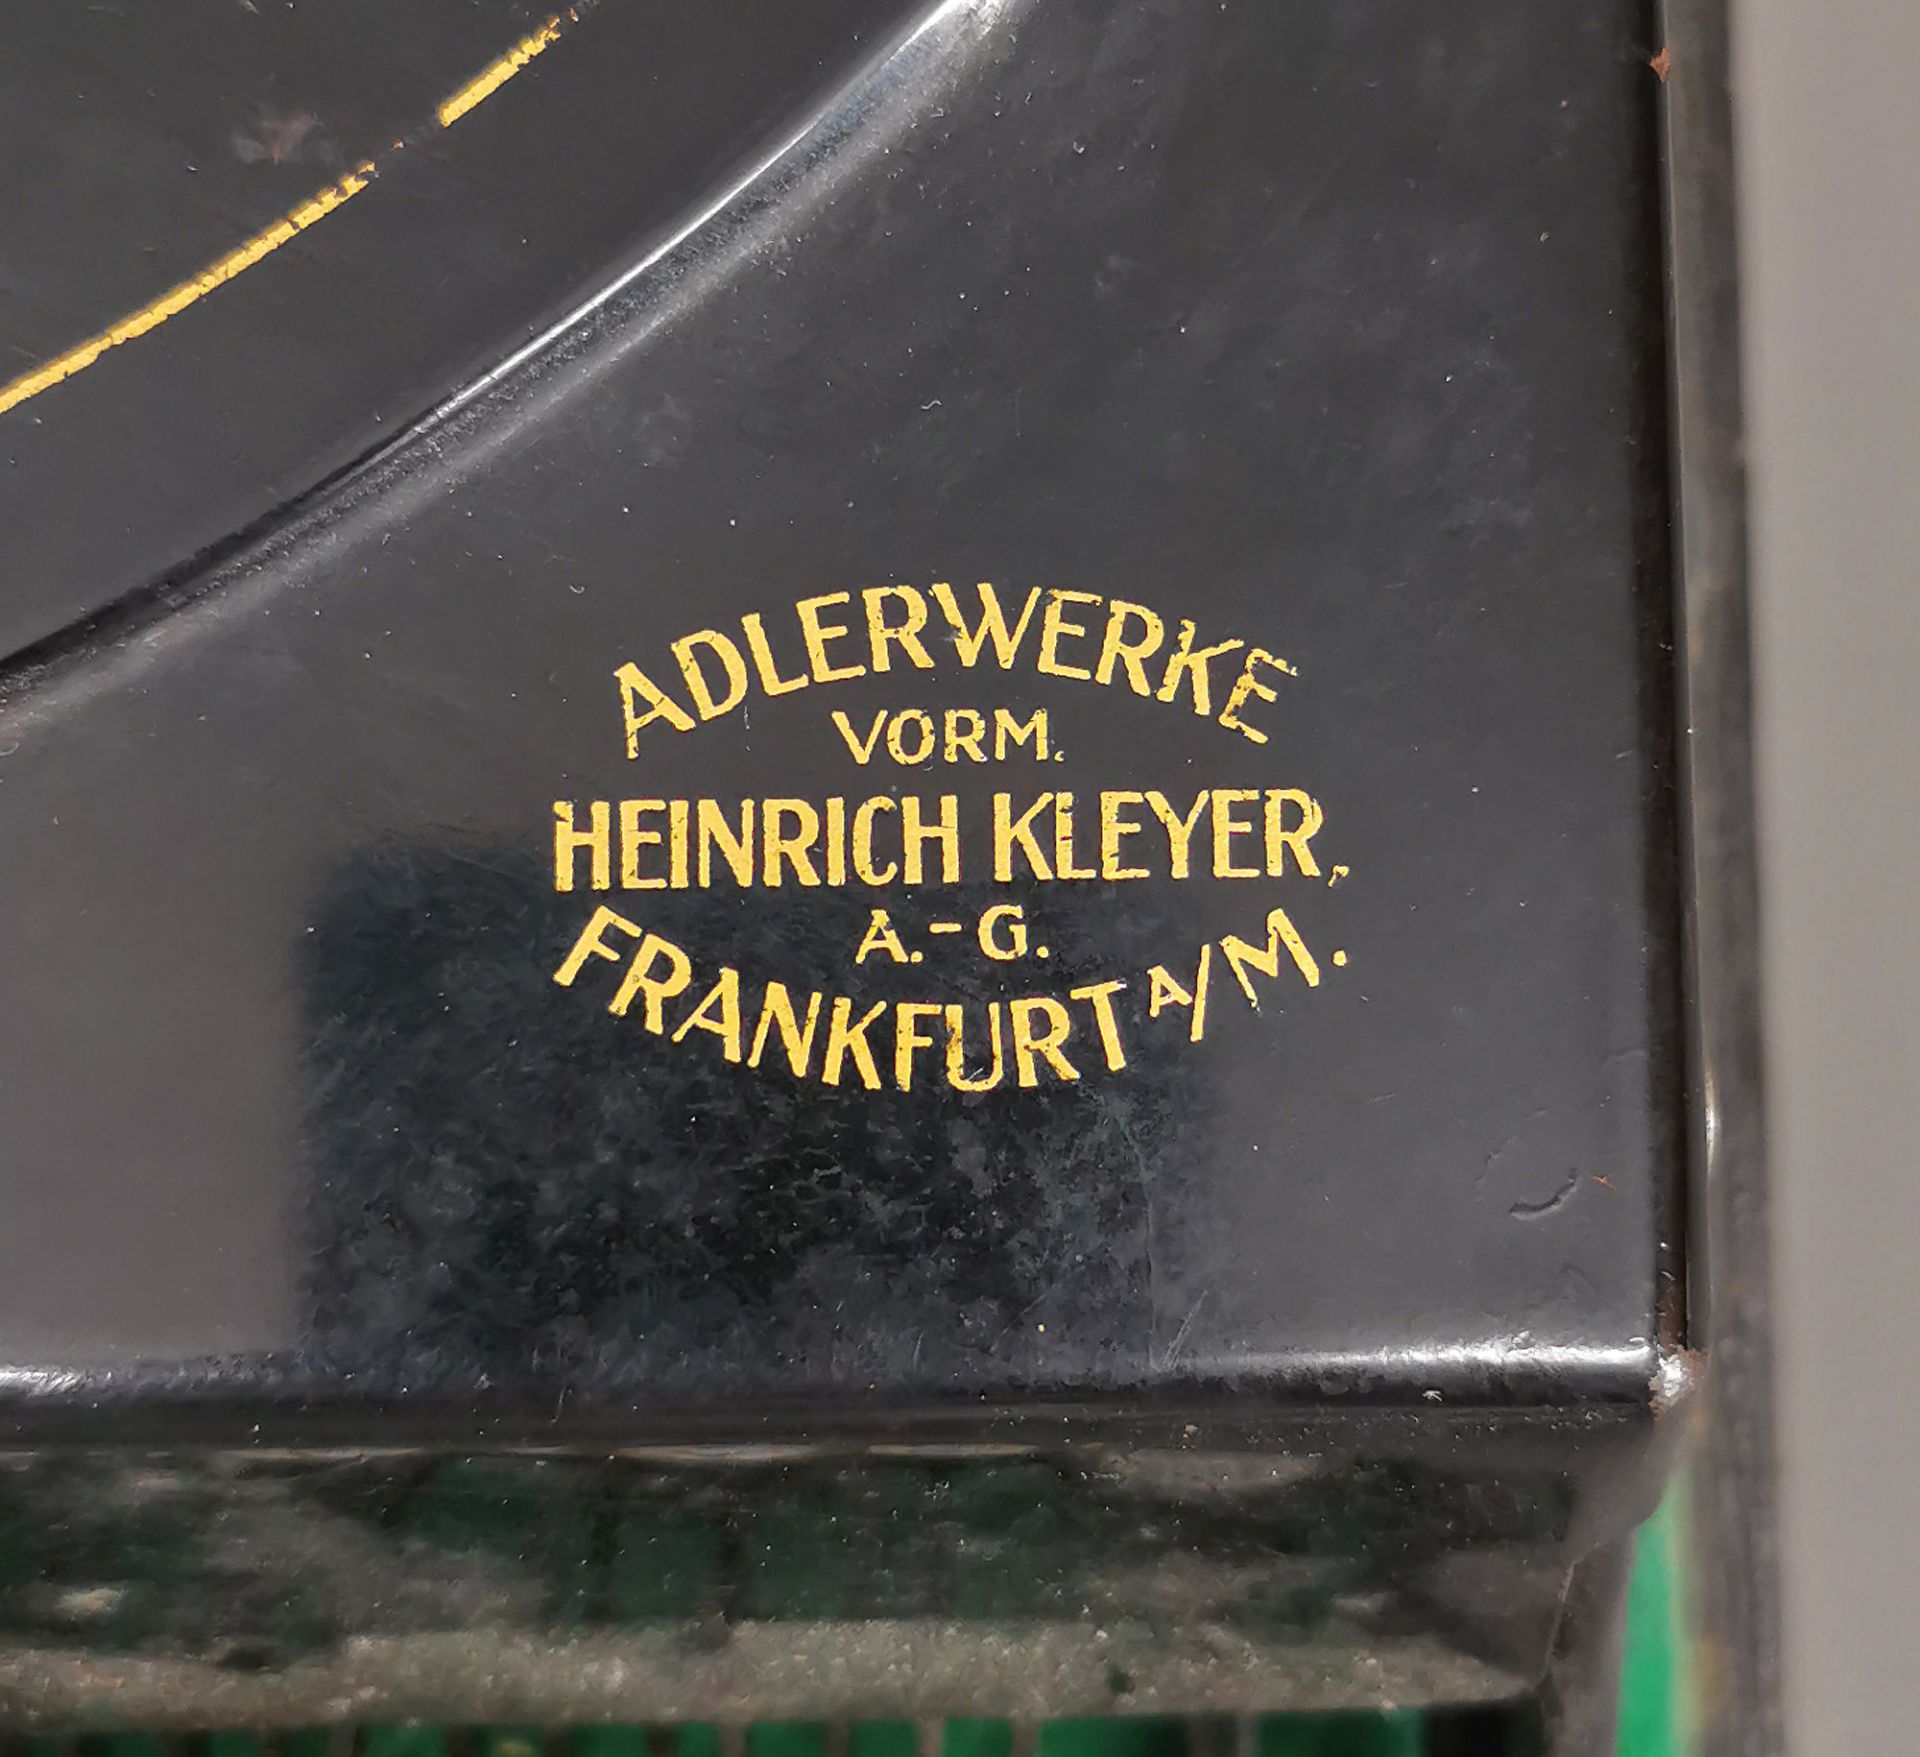 Reise-Schreibmaschine Klein-Adler 2 - Image 5 of 6